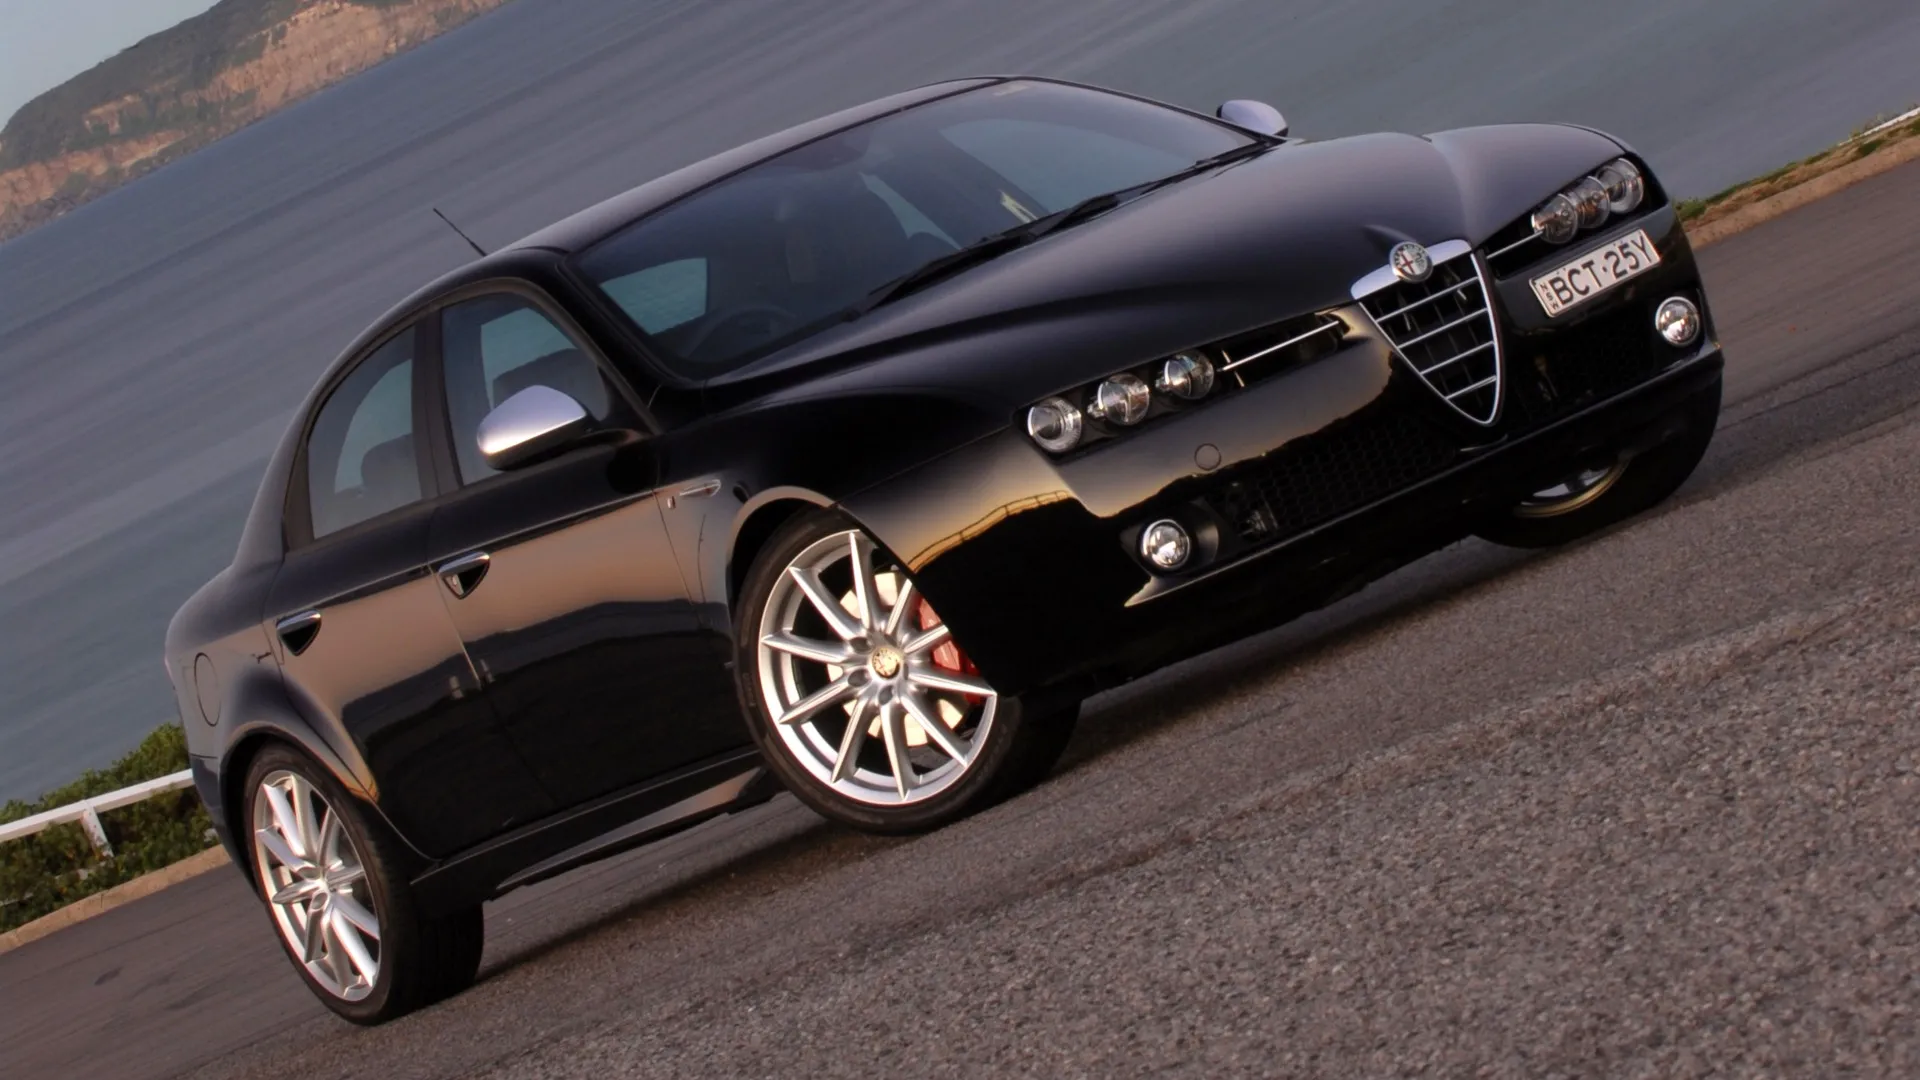 Coche del día: Alfa Romeo 159